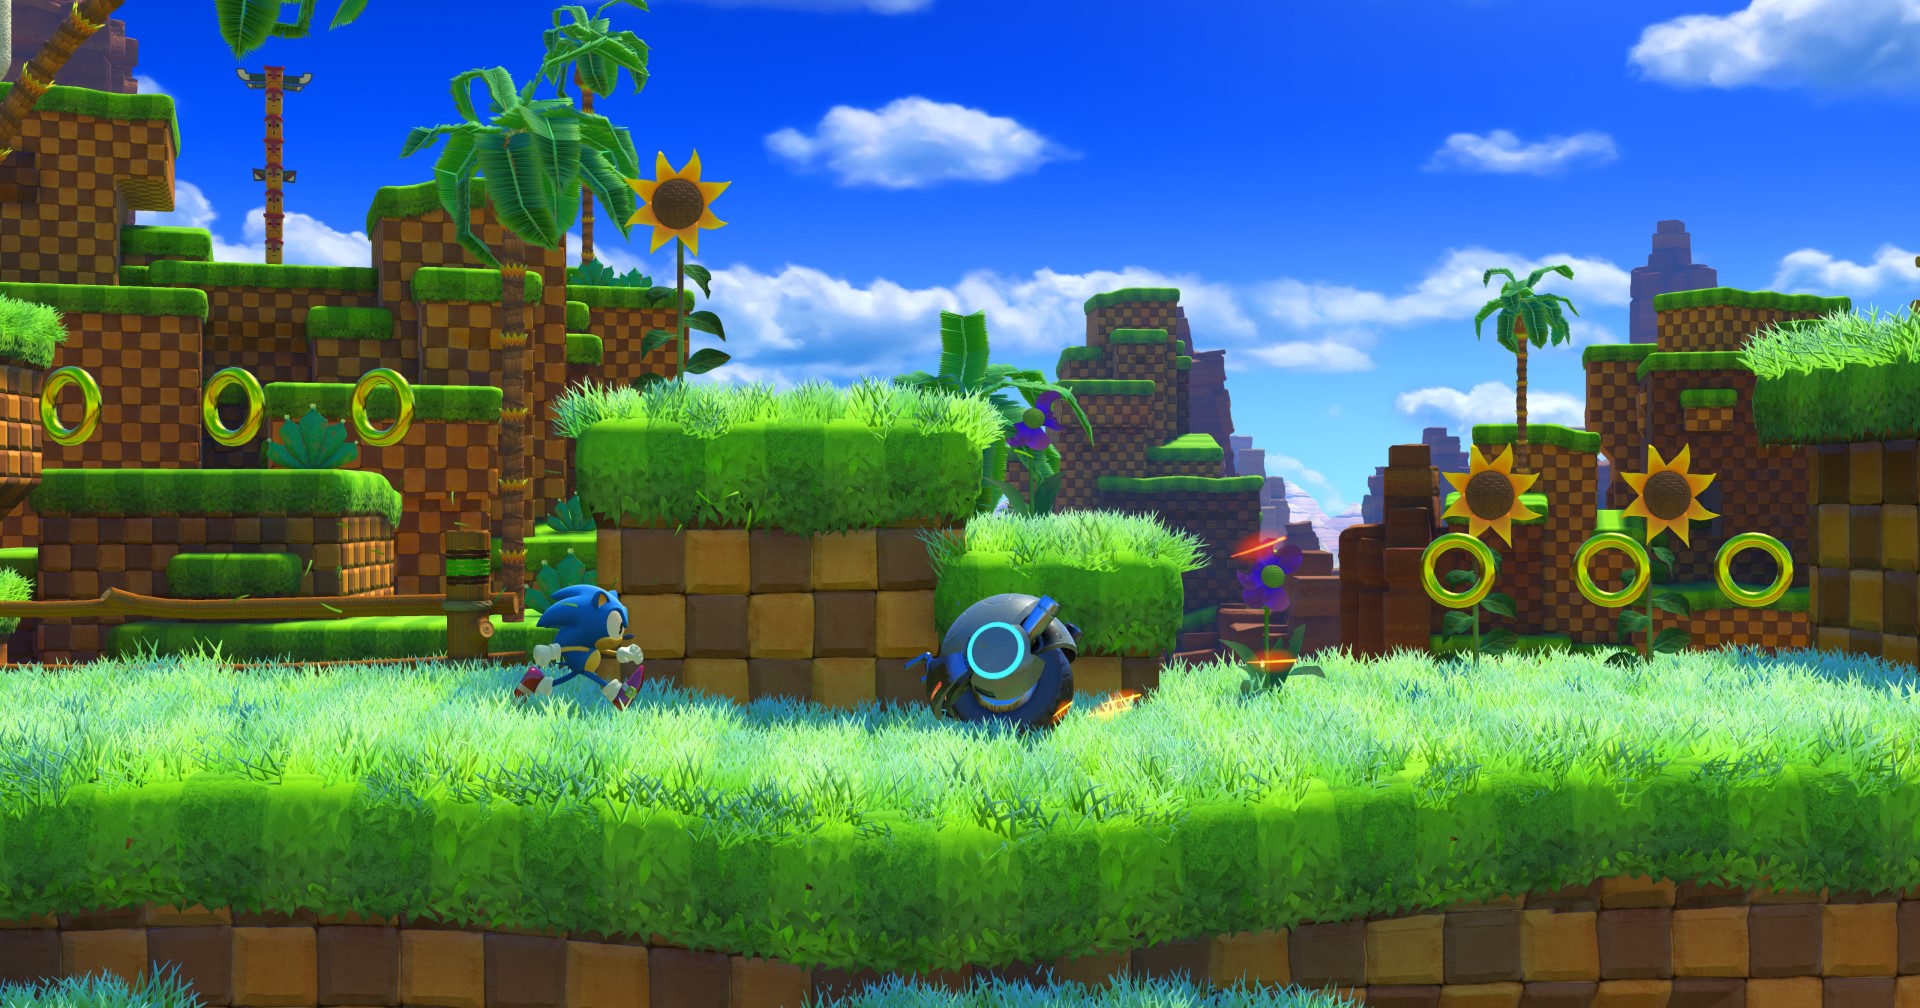 เกมใหม่ในโลก Sonic the Hedgehog ในชื่อ Frontiers อาจเปิดตัวเร็ว ๆ นี้